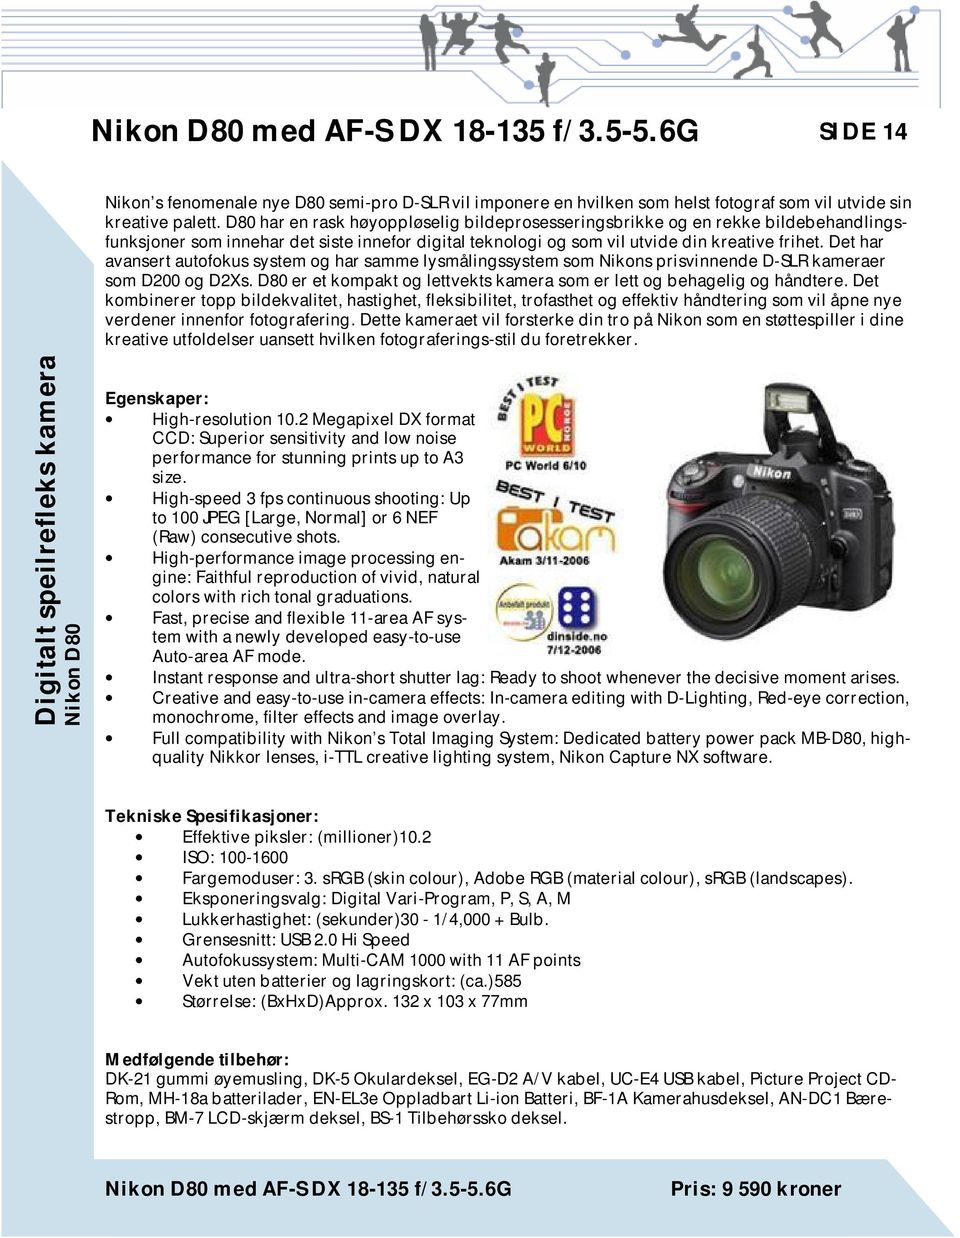 Det har avansert autofokus system og har samme lysmålingssystem som Nikons prisvinnende D-SLR kameraer som D200 og D2Xs. D80 er et kompakt og lettvekts kamera som er lett og behagelig og håndtere.